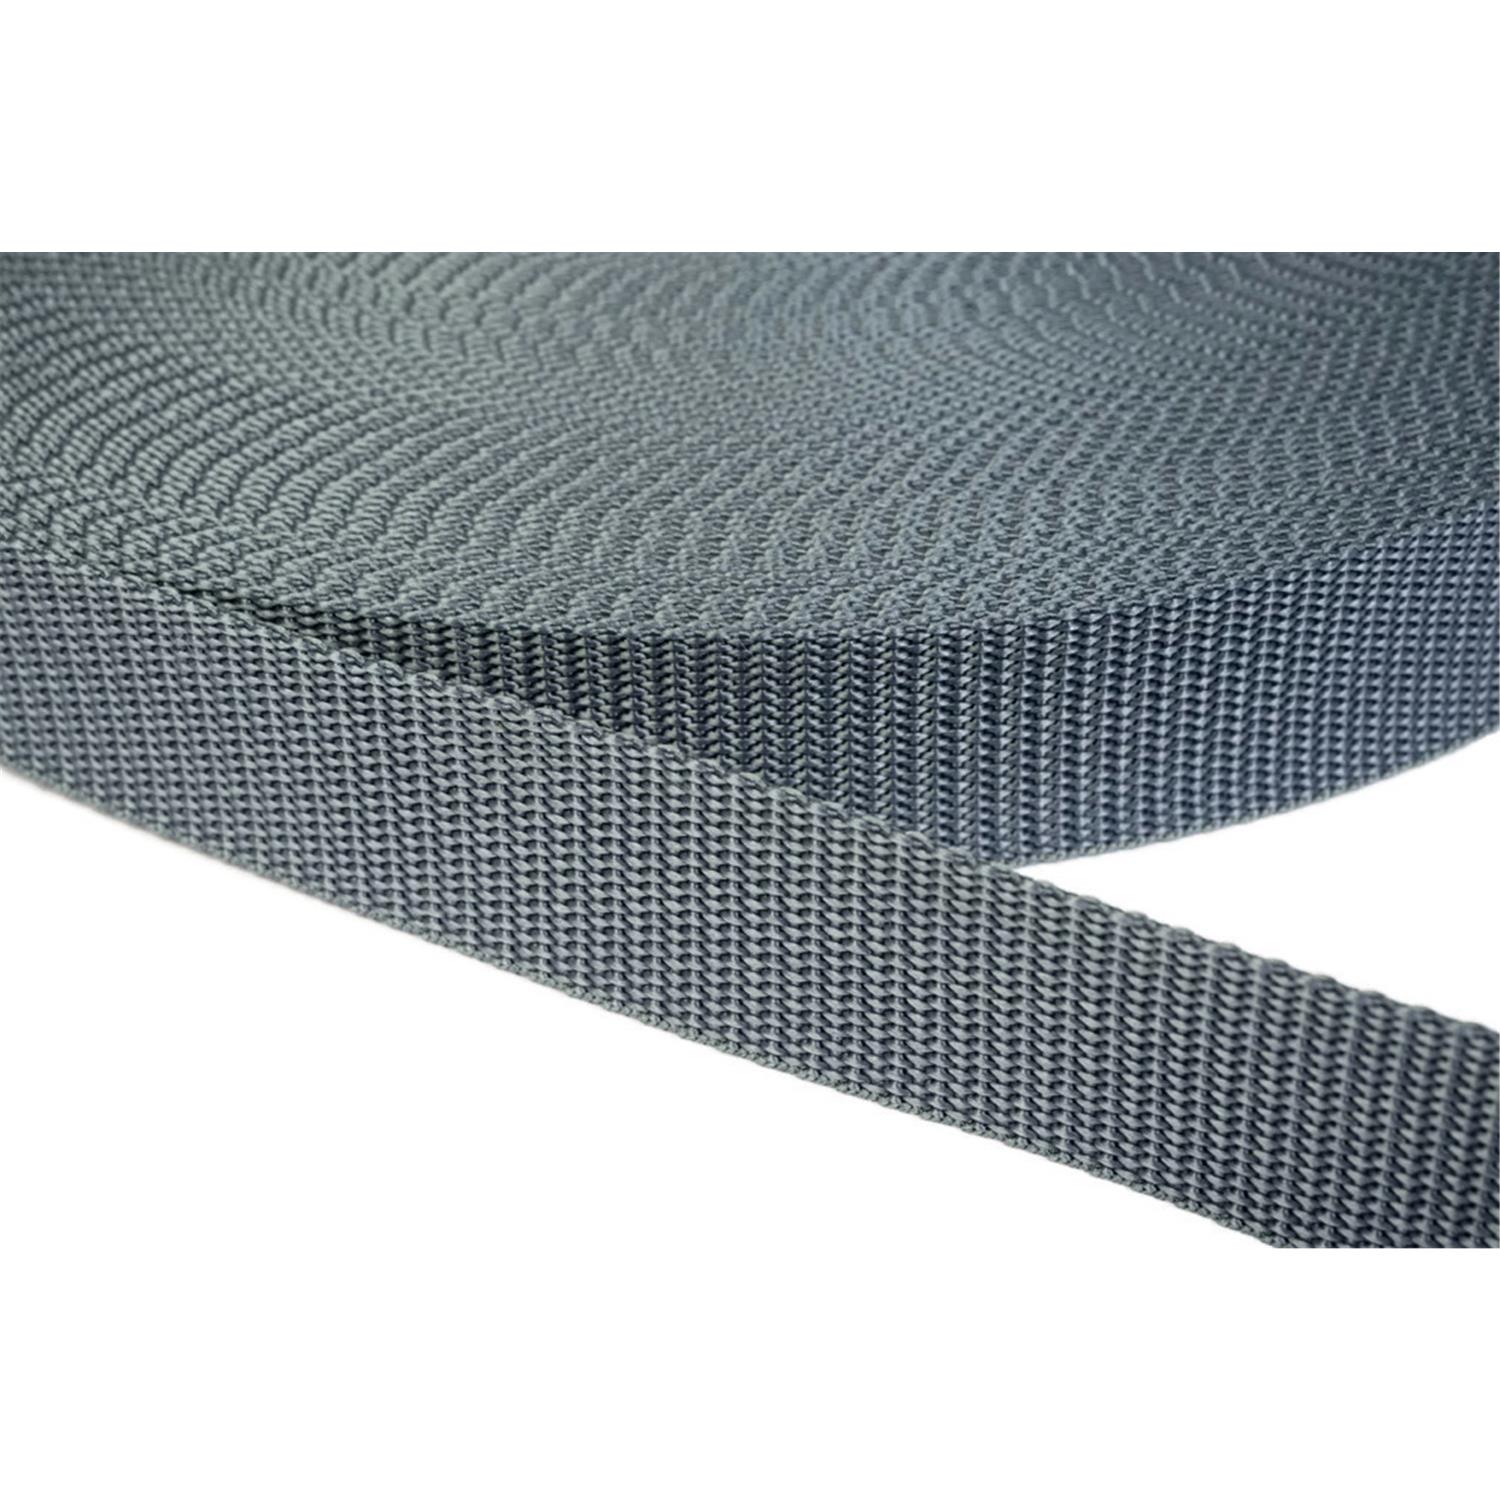 Gurtband 25mm breit aus Polypropylen in 41 Farben 38 - mittelgrau 6 Meter